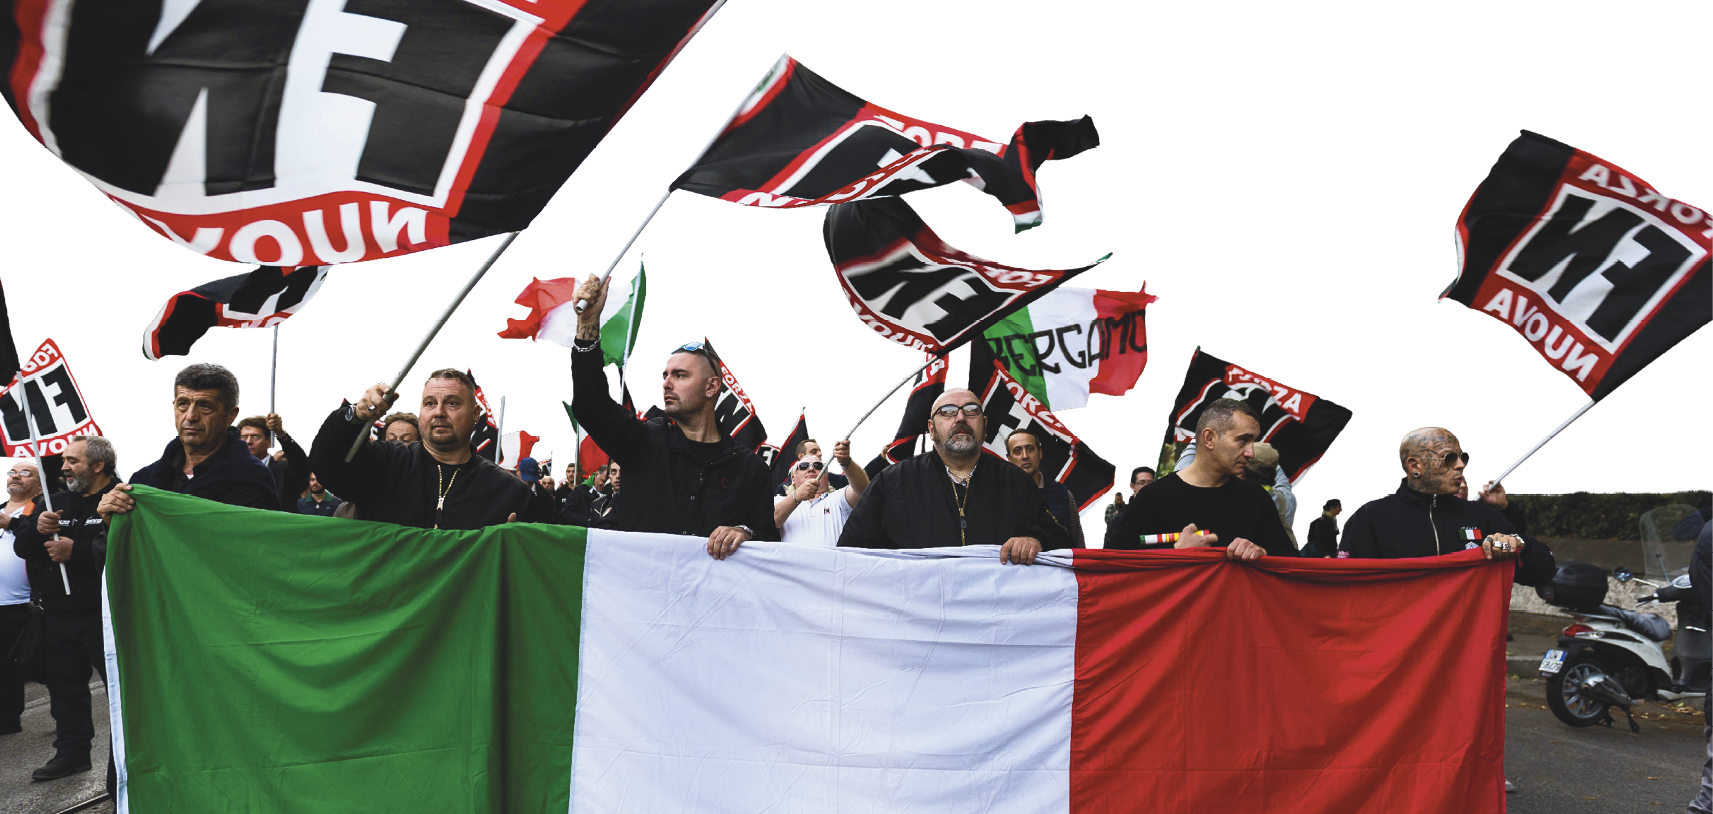 Fotografia. Homens de roupa escura em uma manifestação. Balançam bandeiras pretas com as iniciais FN. Os homens à frente carregam a bandeira da Itália esticada.